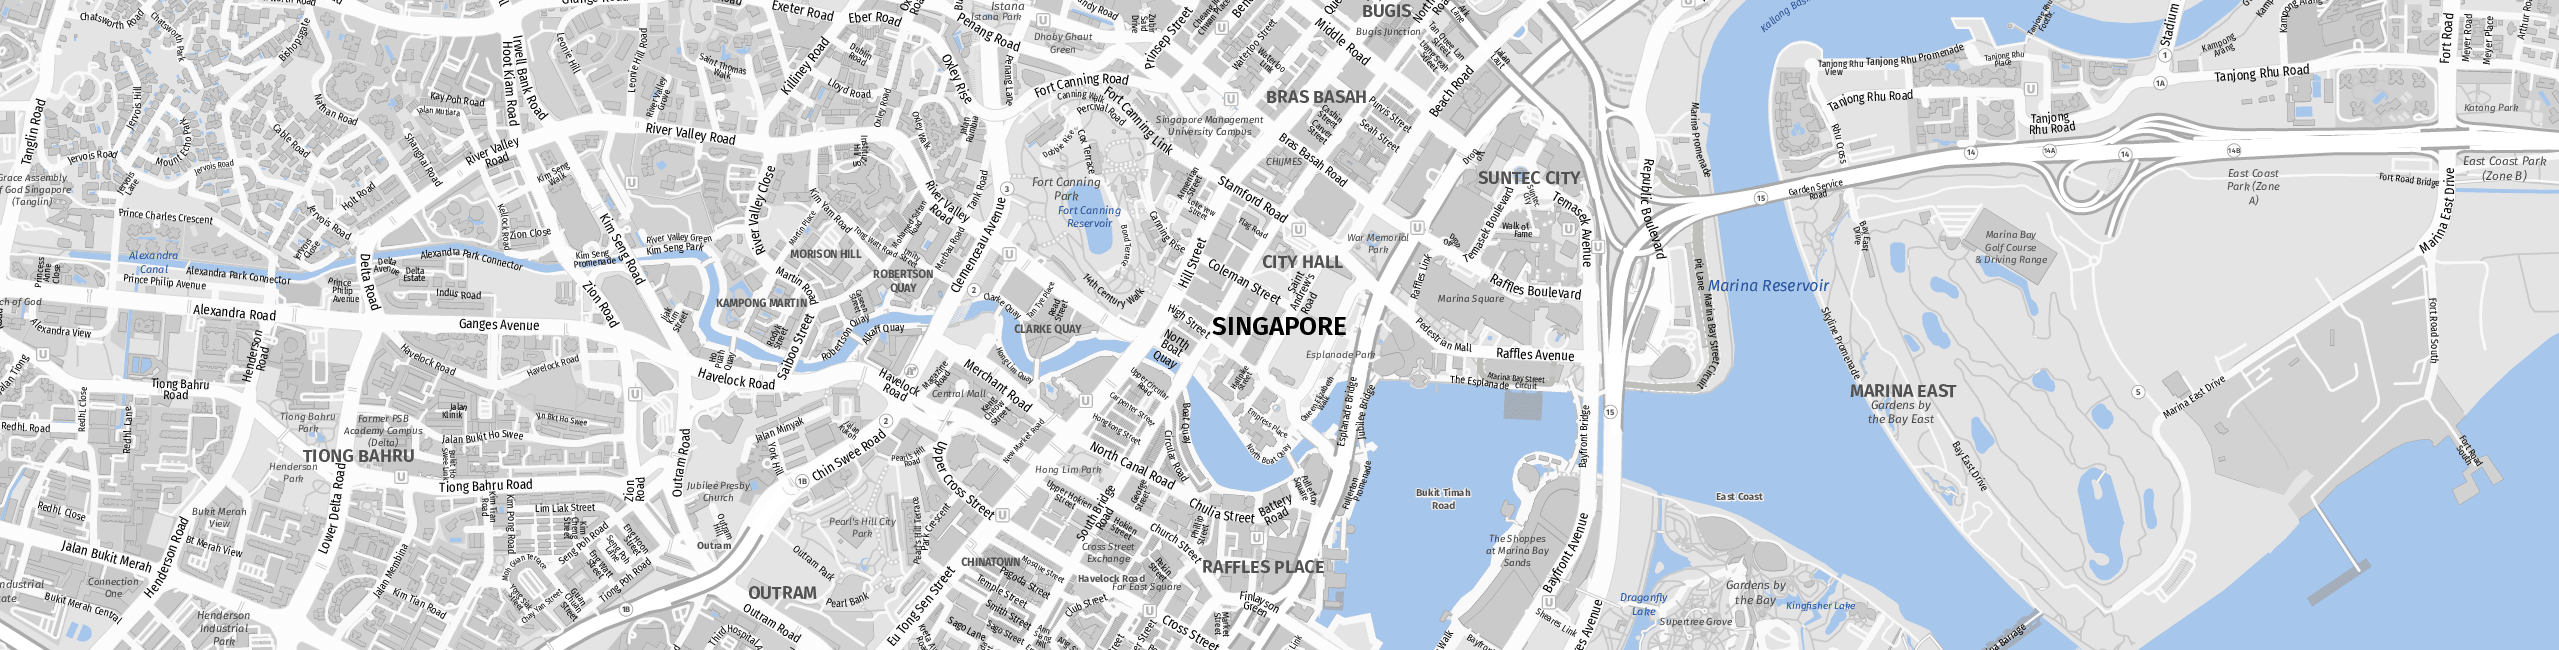 Stadtplan Singapore zum Downloaden.